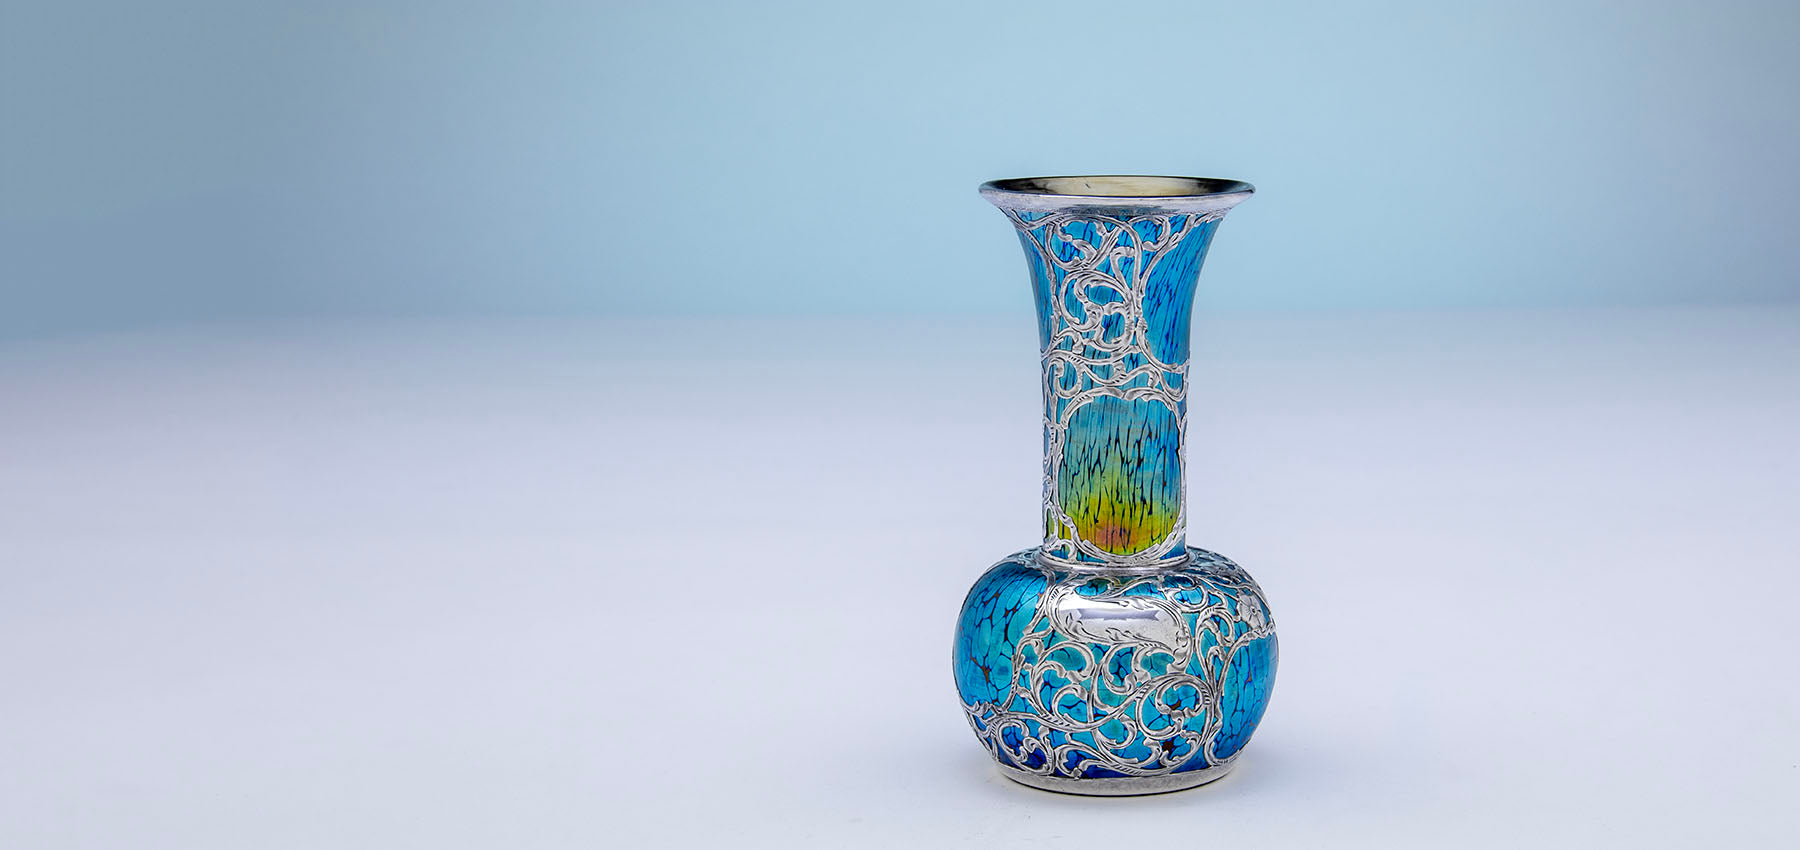 Alvin (attr.) Antique Silver Overlay on Loetz (Attr.) Glass Vase,  c. 1900